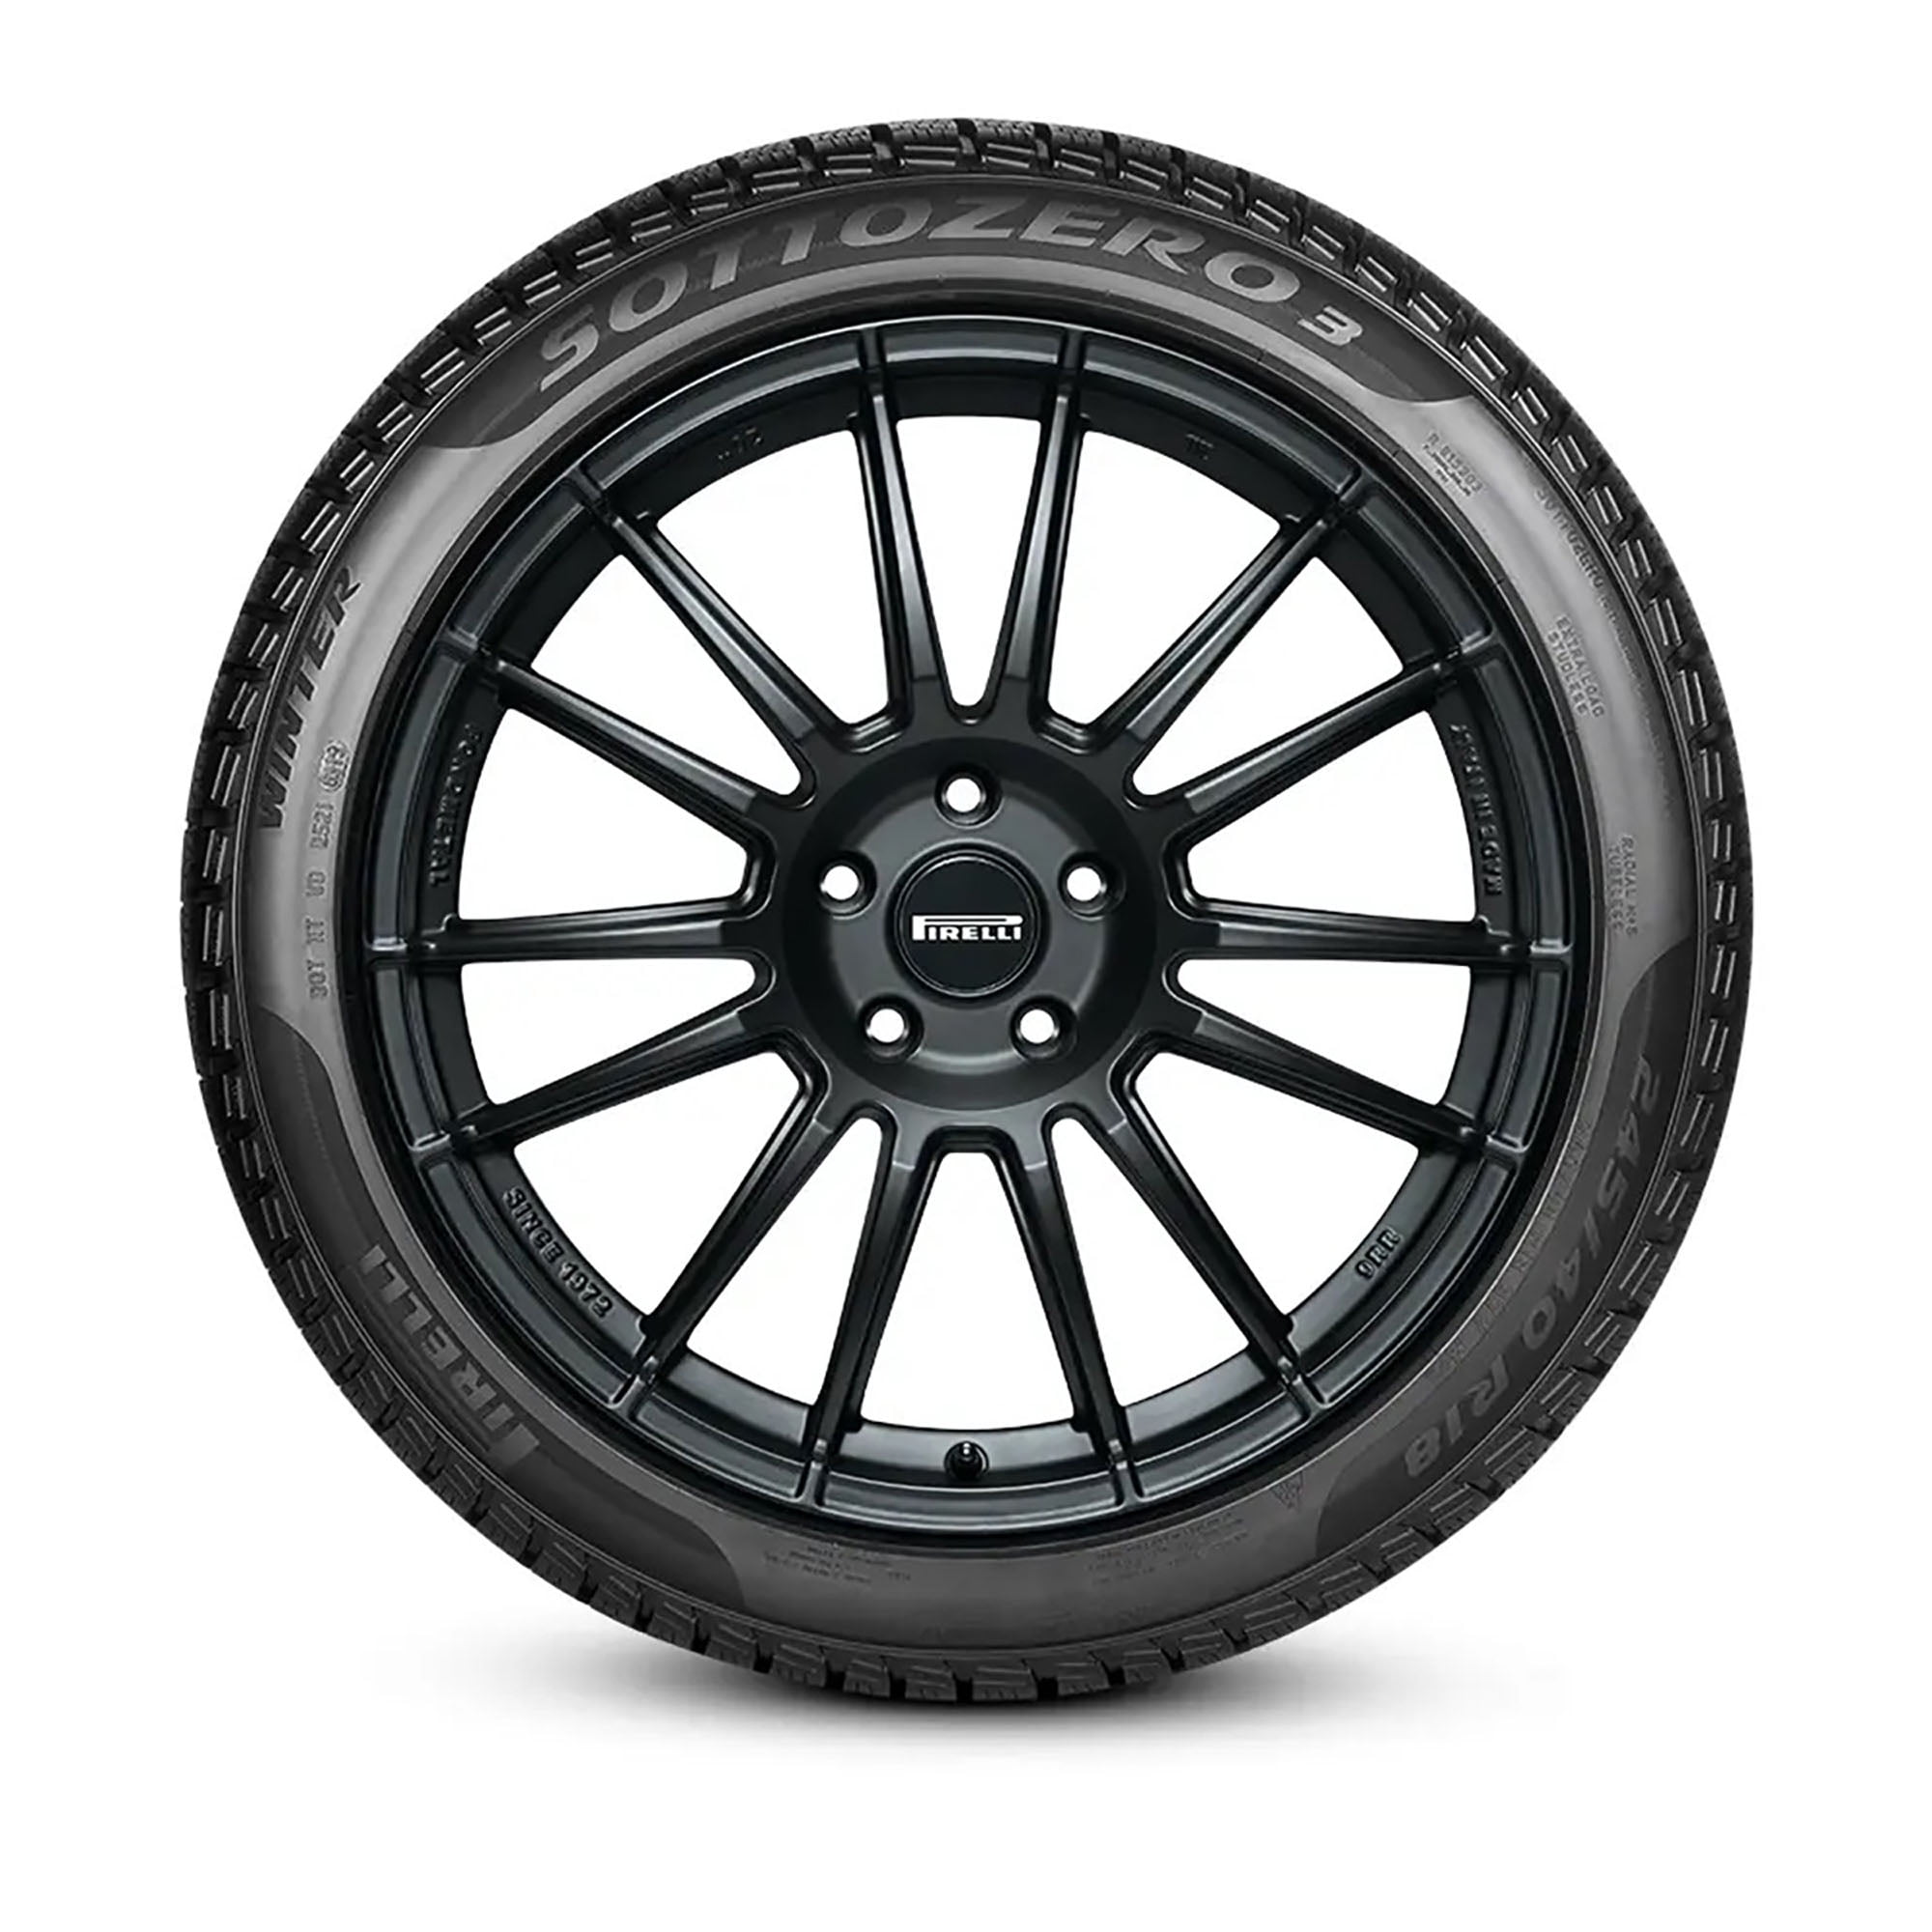 Pirelli Winter Sottozero 3 Winter 245/35R21 96W XL Passenger Tire 